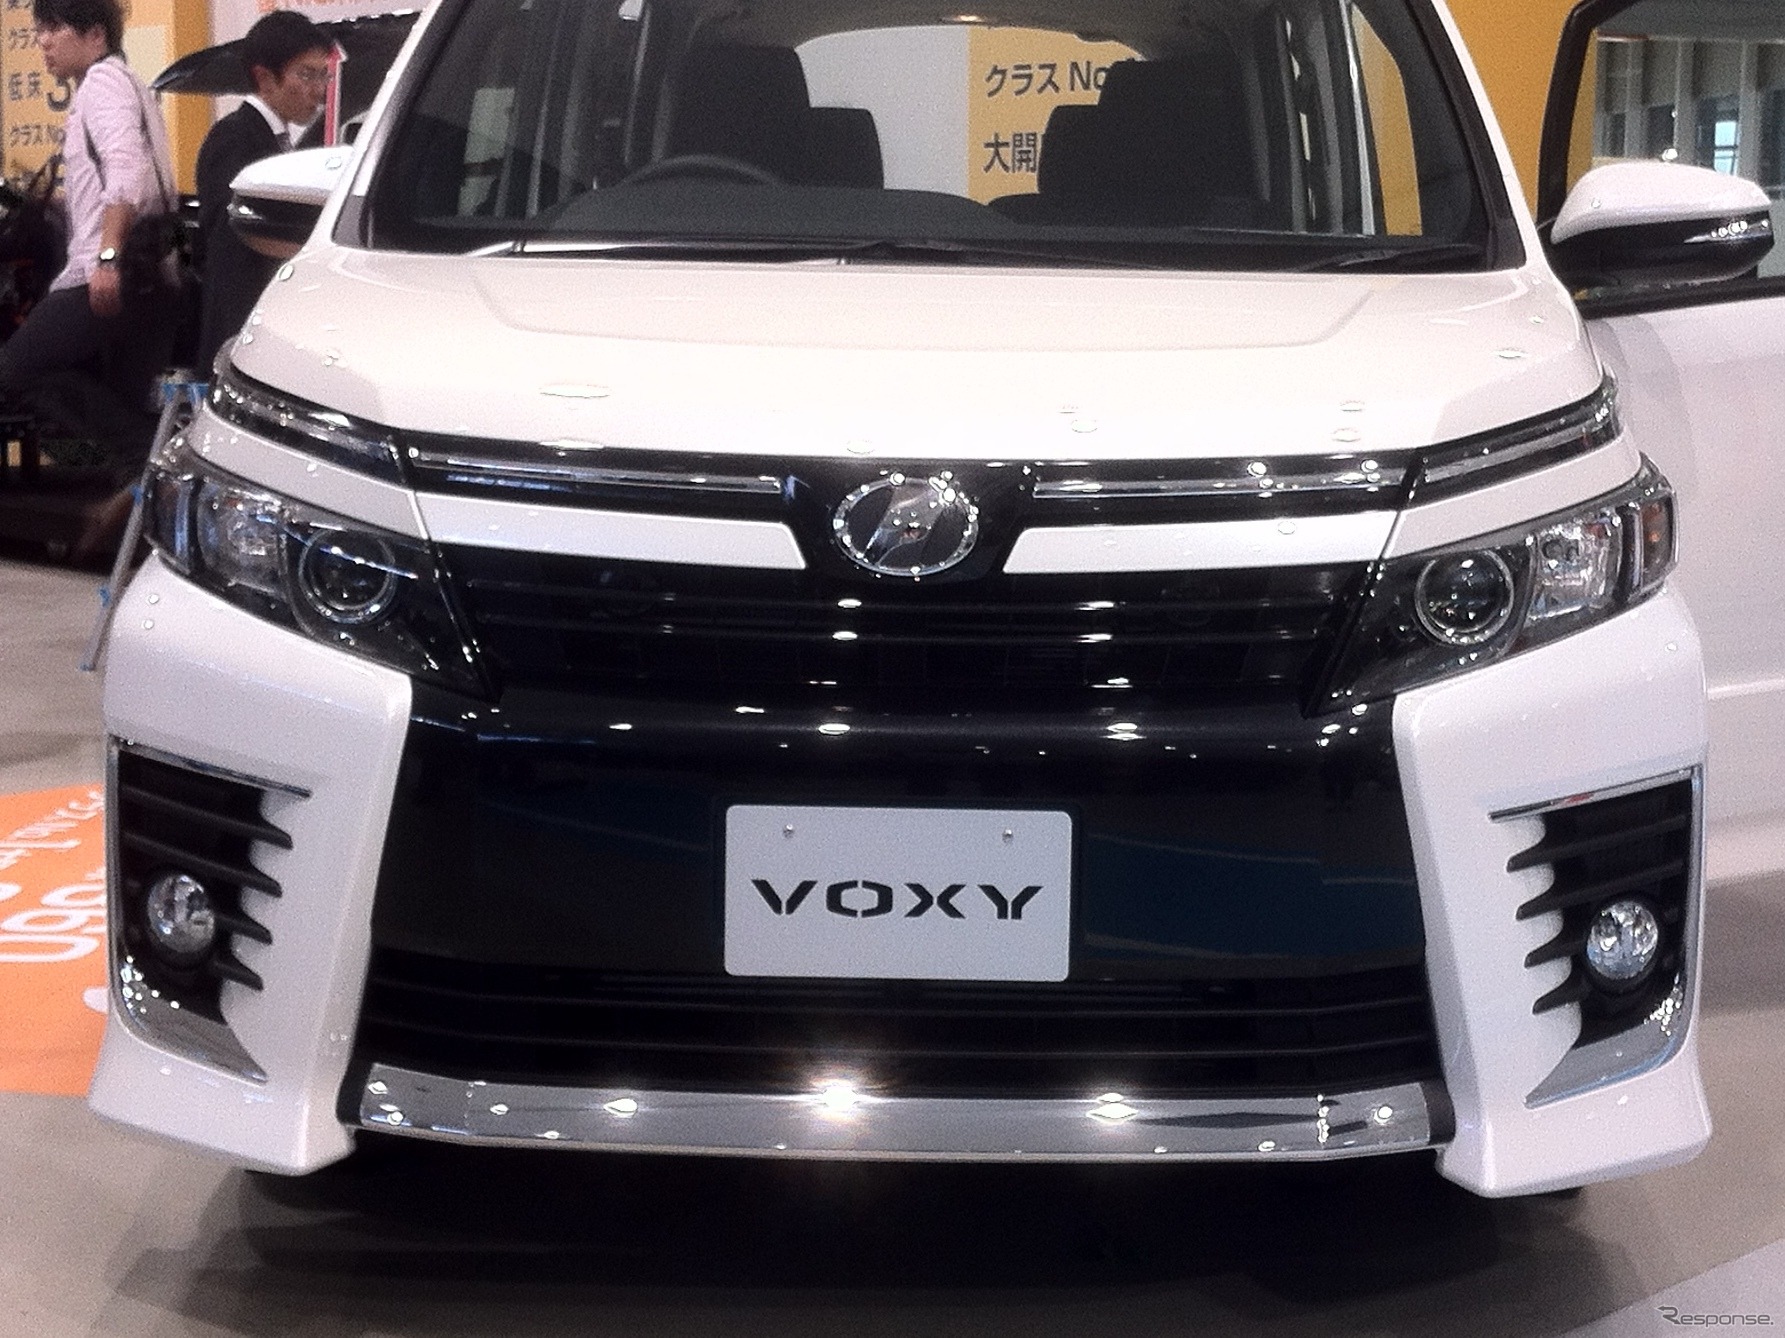 トヨタ 新型ヴォクシー、ノア 発表